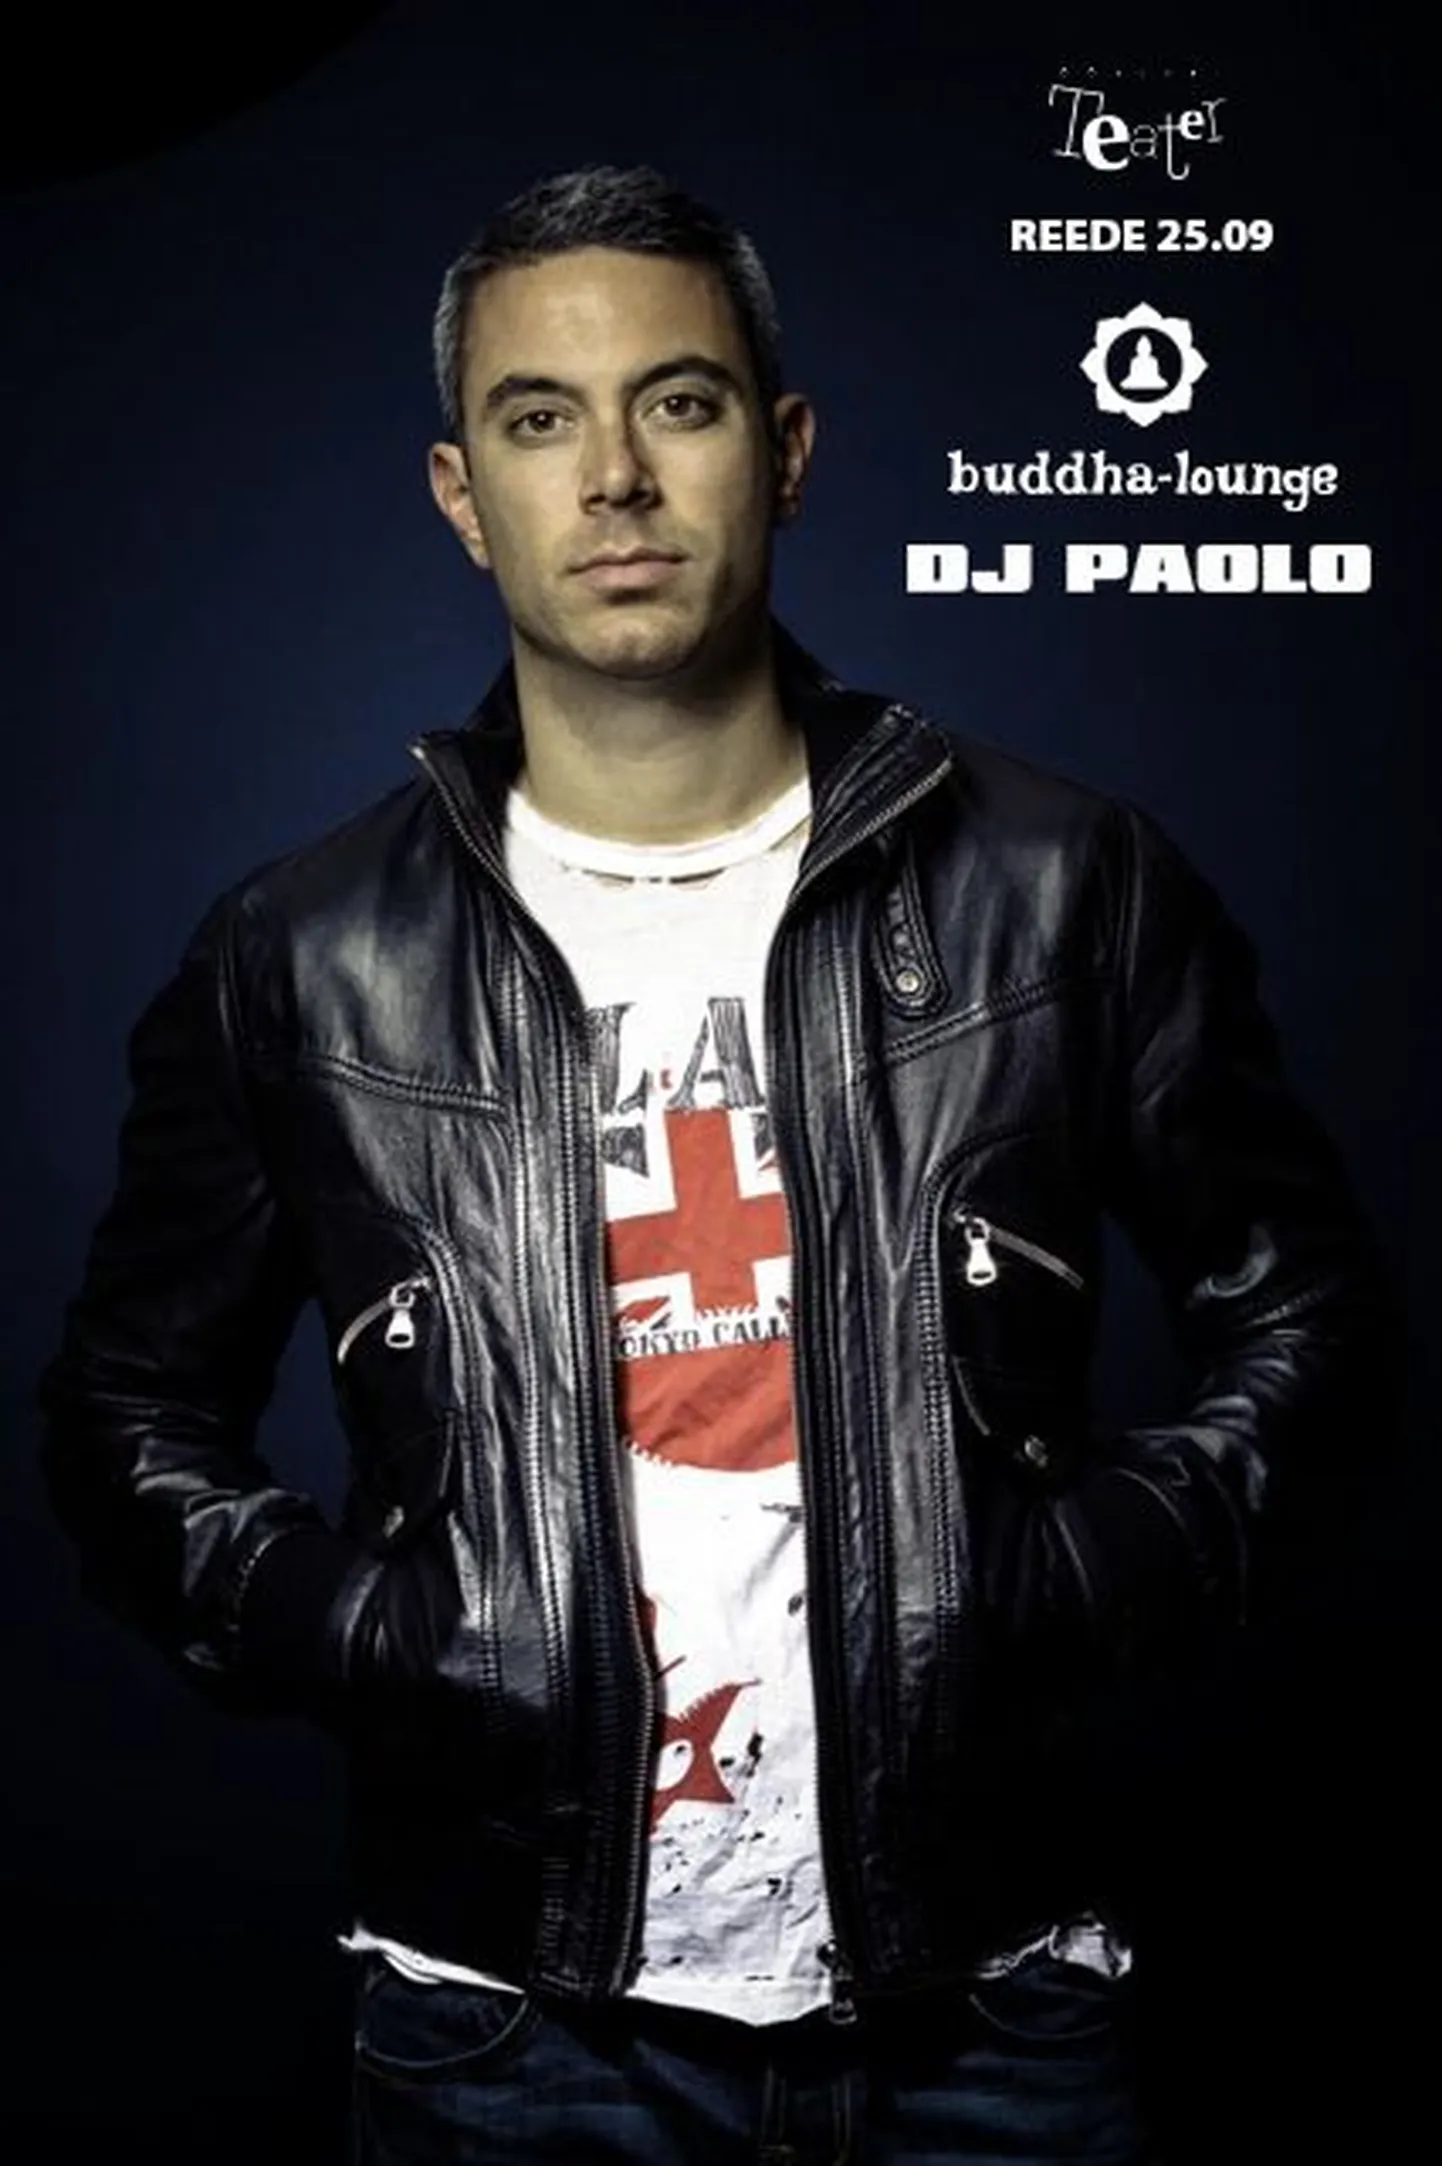 DJ PAOLO